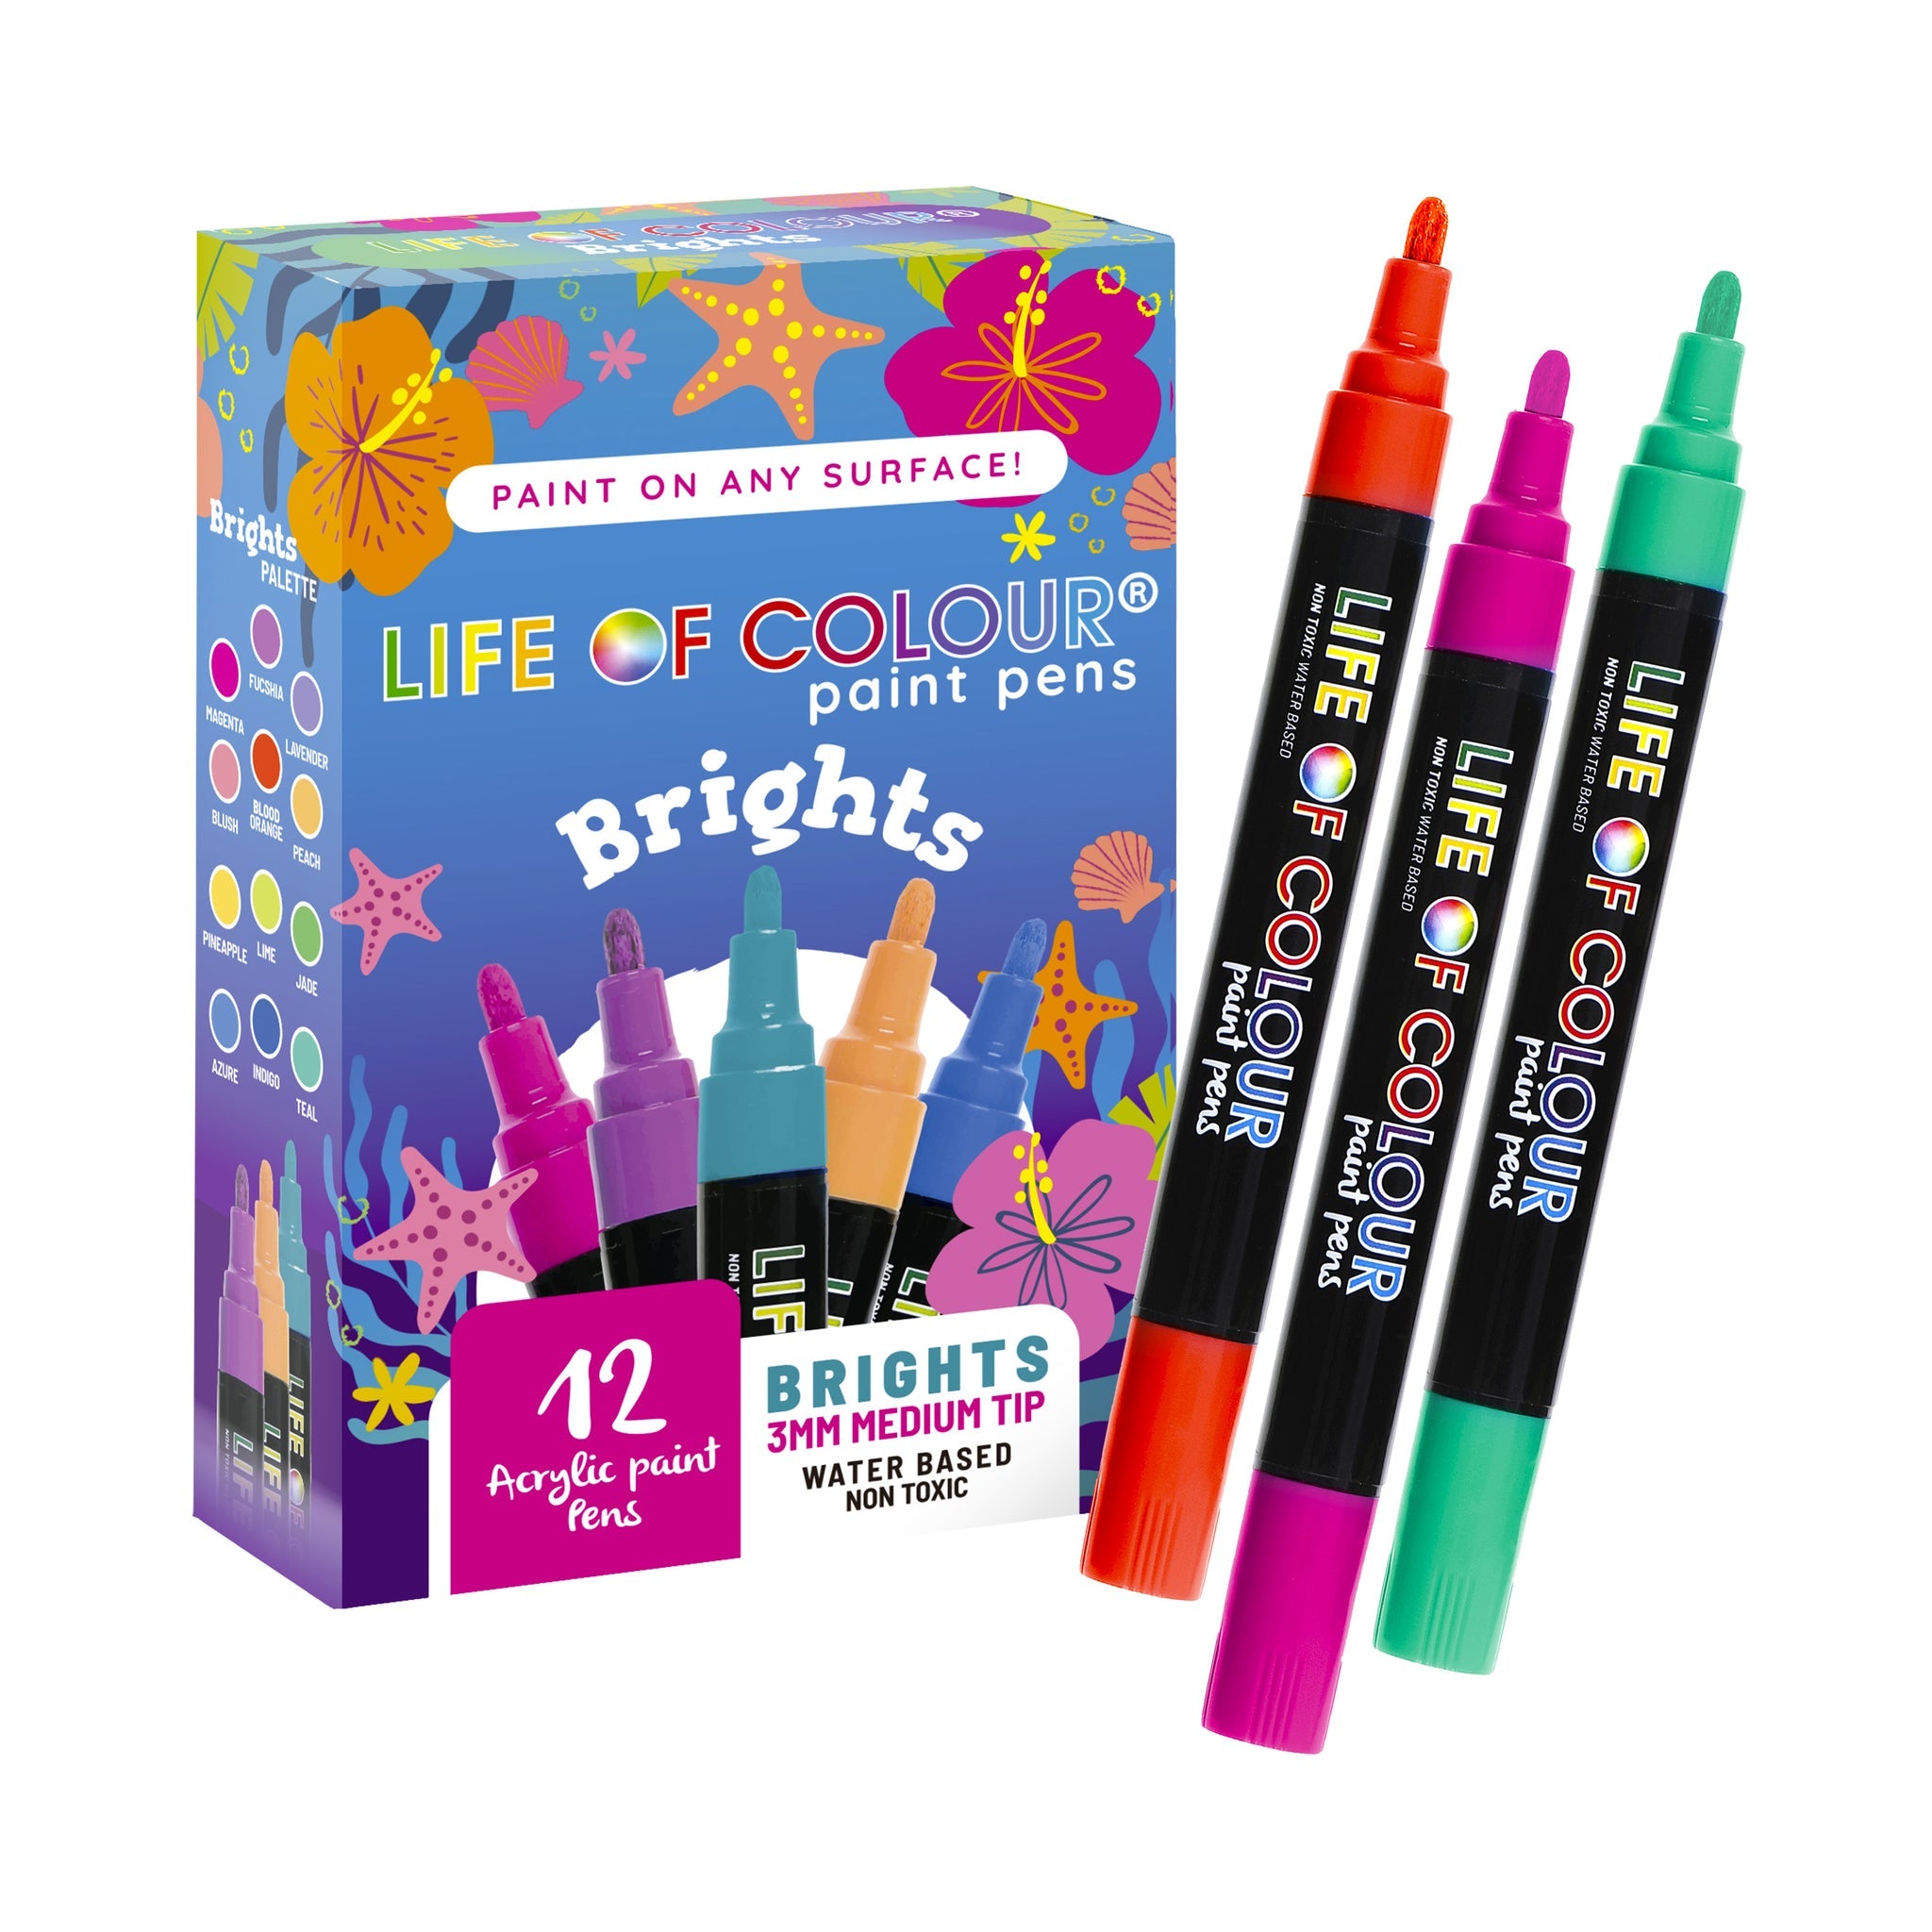 Life of Colour Paint Pens Bright Pens